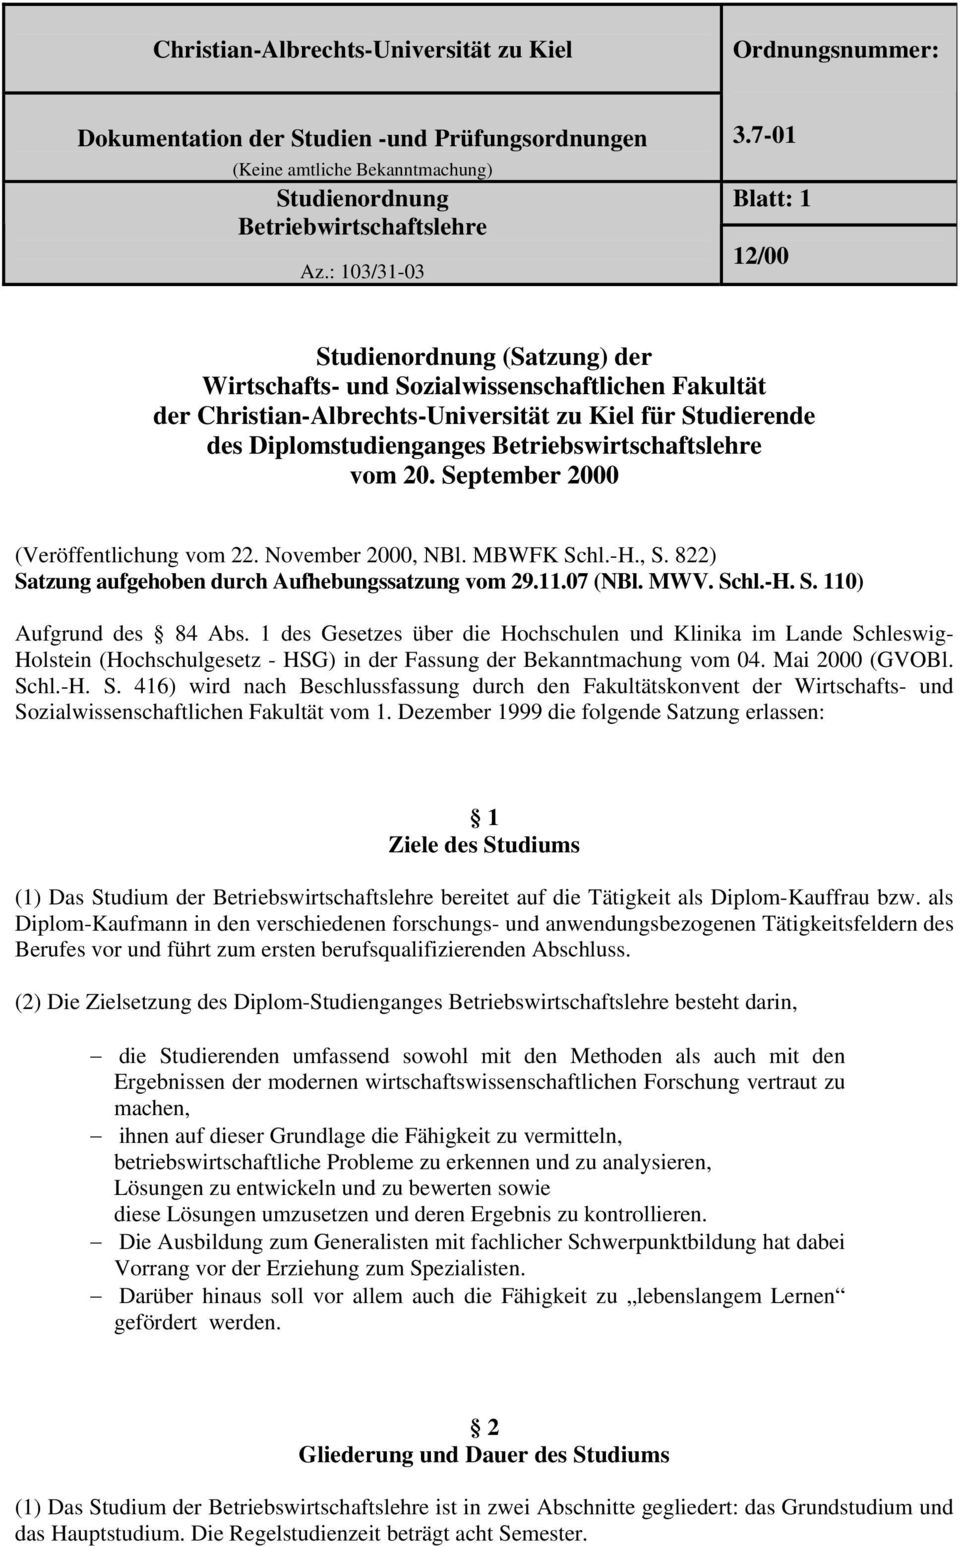 1 des Gesetzes über die Hochschulen und Klinika im Lande Schleswig- Holstein (Hochschulgesetz - HSG) in der Fassung der Bekanntmachung vom 04. Mai 2000 (GVOBl. Schl.-H. S. 416) wird nach Beschlussfassung durch den Fakultätskonvent der Wirtschafts- und Sozialwissenschaftlichen Fakultät vom 1.